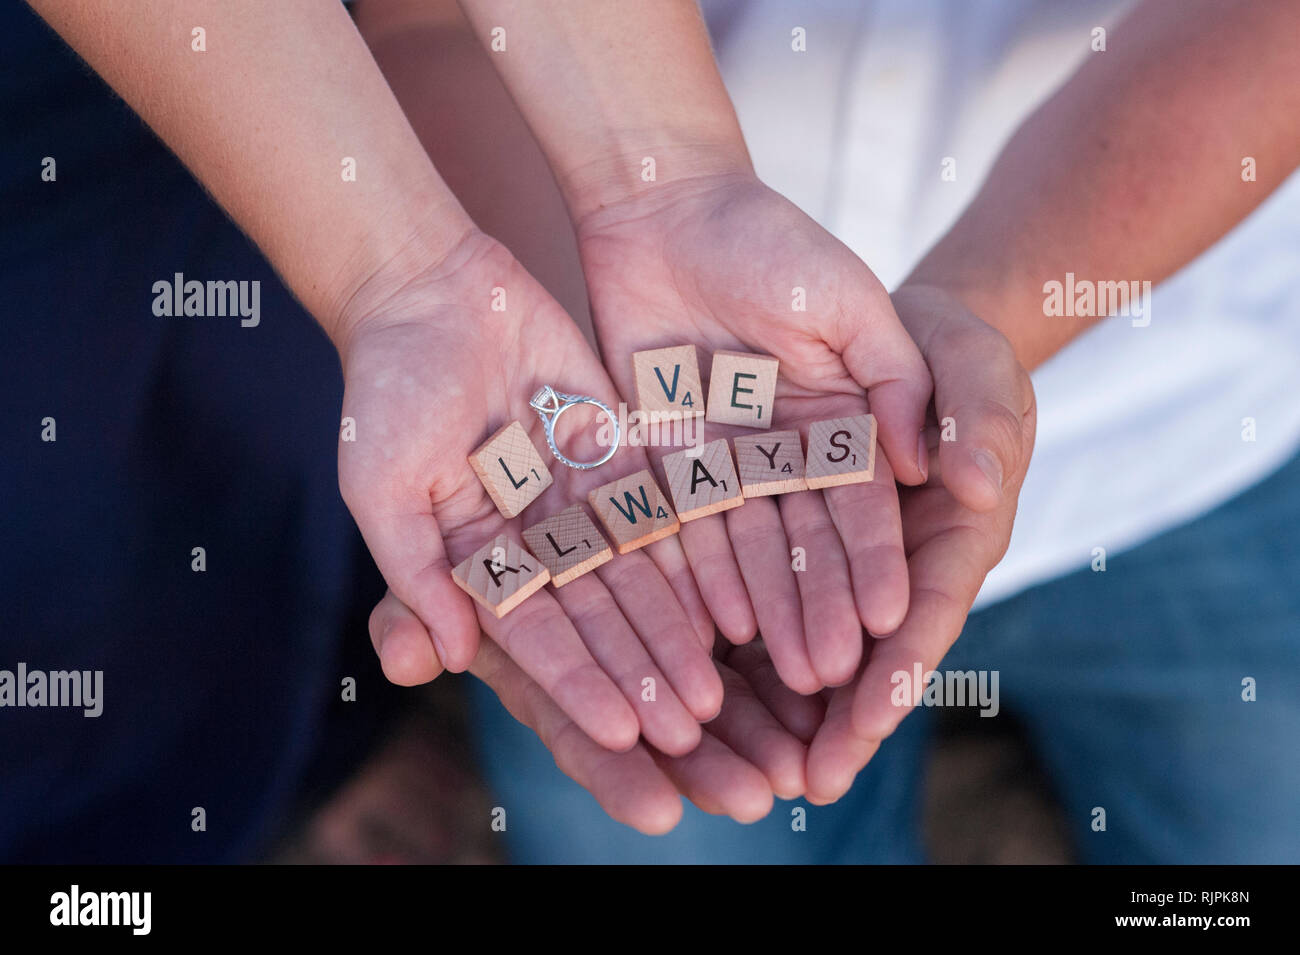 Orizzontale di close-up di un fidanzati le mani a coppa attorno a ciascun altro, tenendo a scrabble pezzi l'ortografia delle parole "amore sempre' con l'anello. Foto Stock